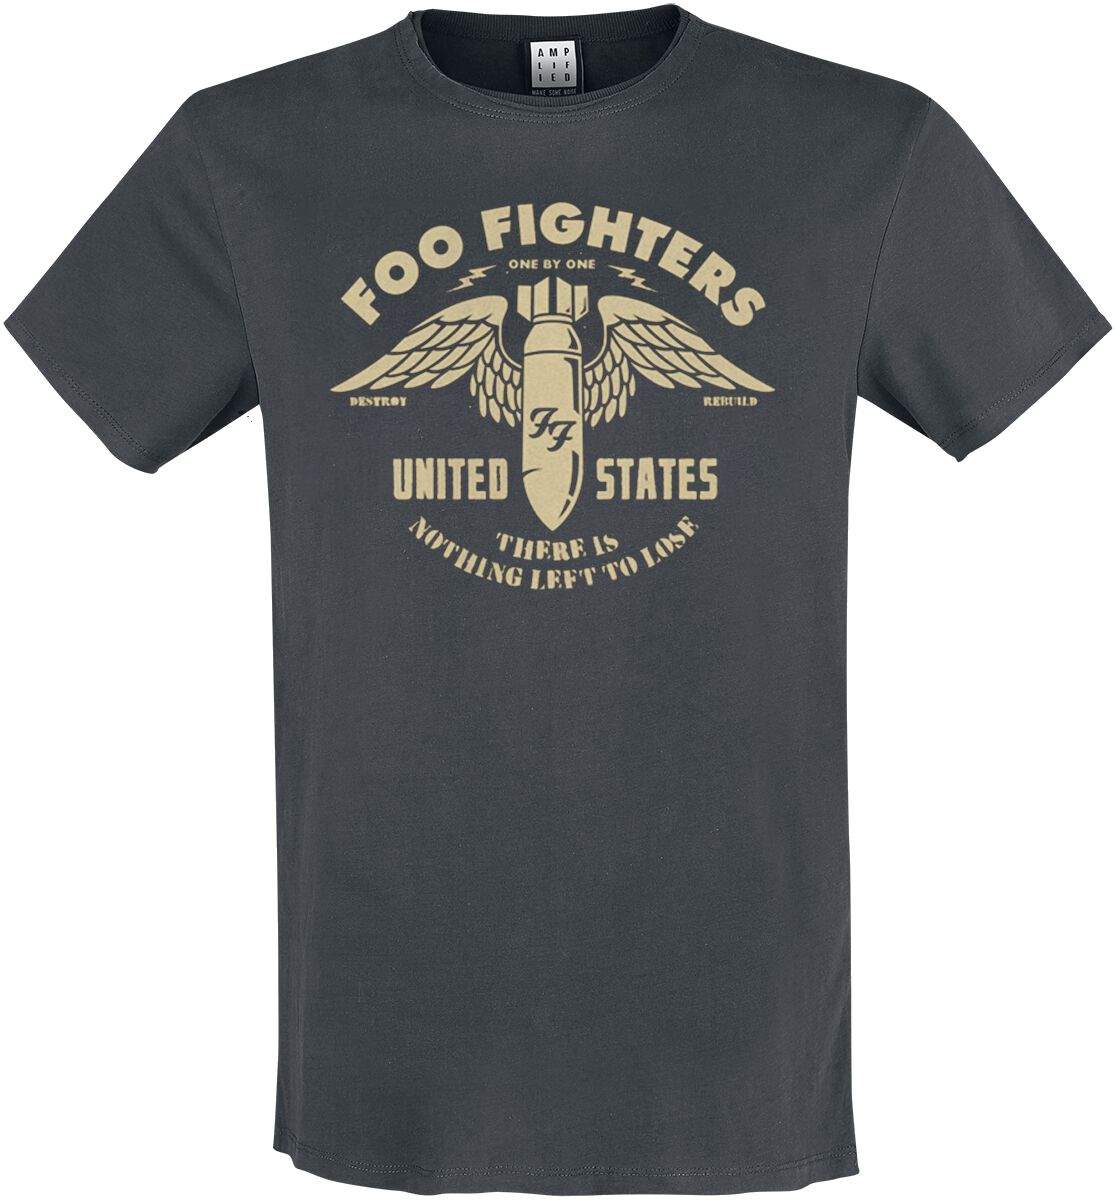 Foo Fighters T-Shirt - Amplified Collection - One By One - S bis 3XL - für Männer - Größe M - charcoal  - Lizenziertes Merchandise!